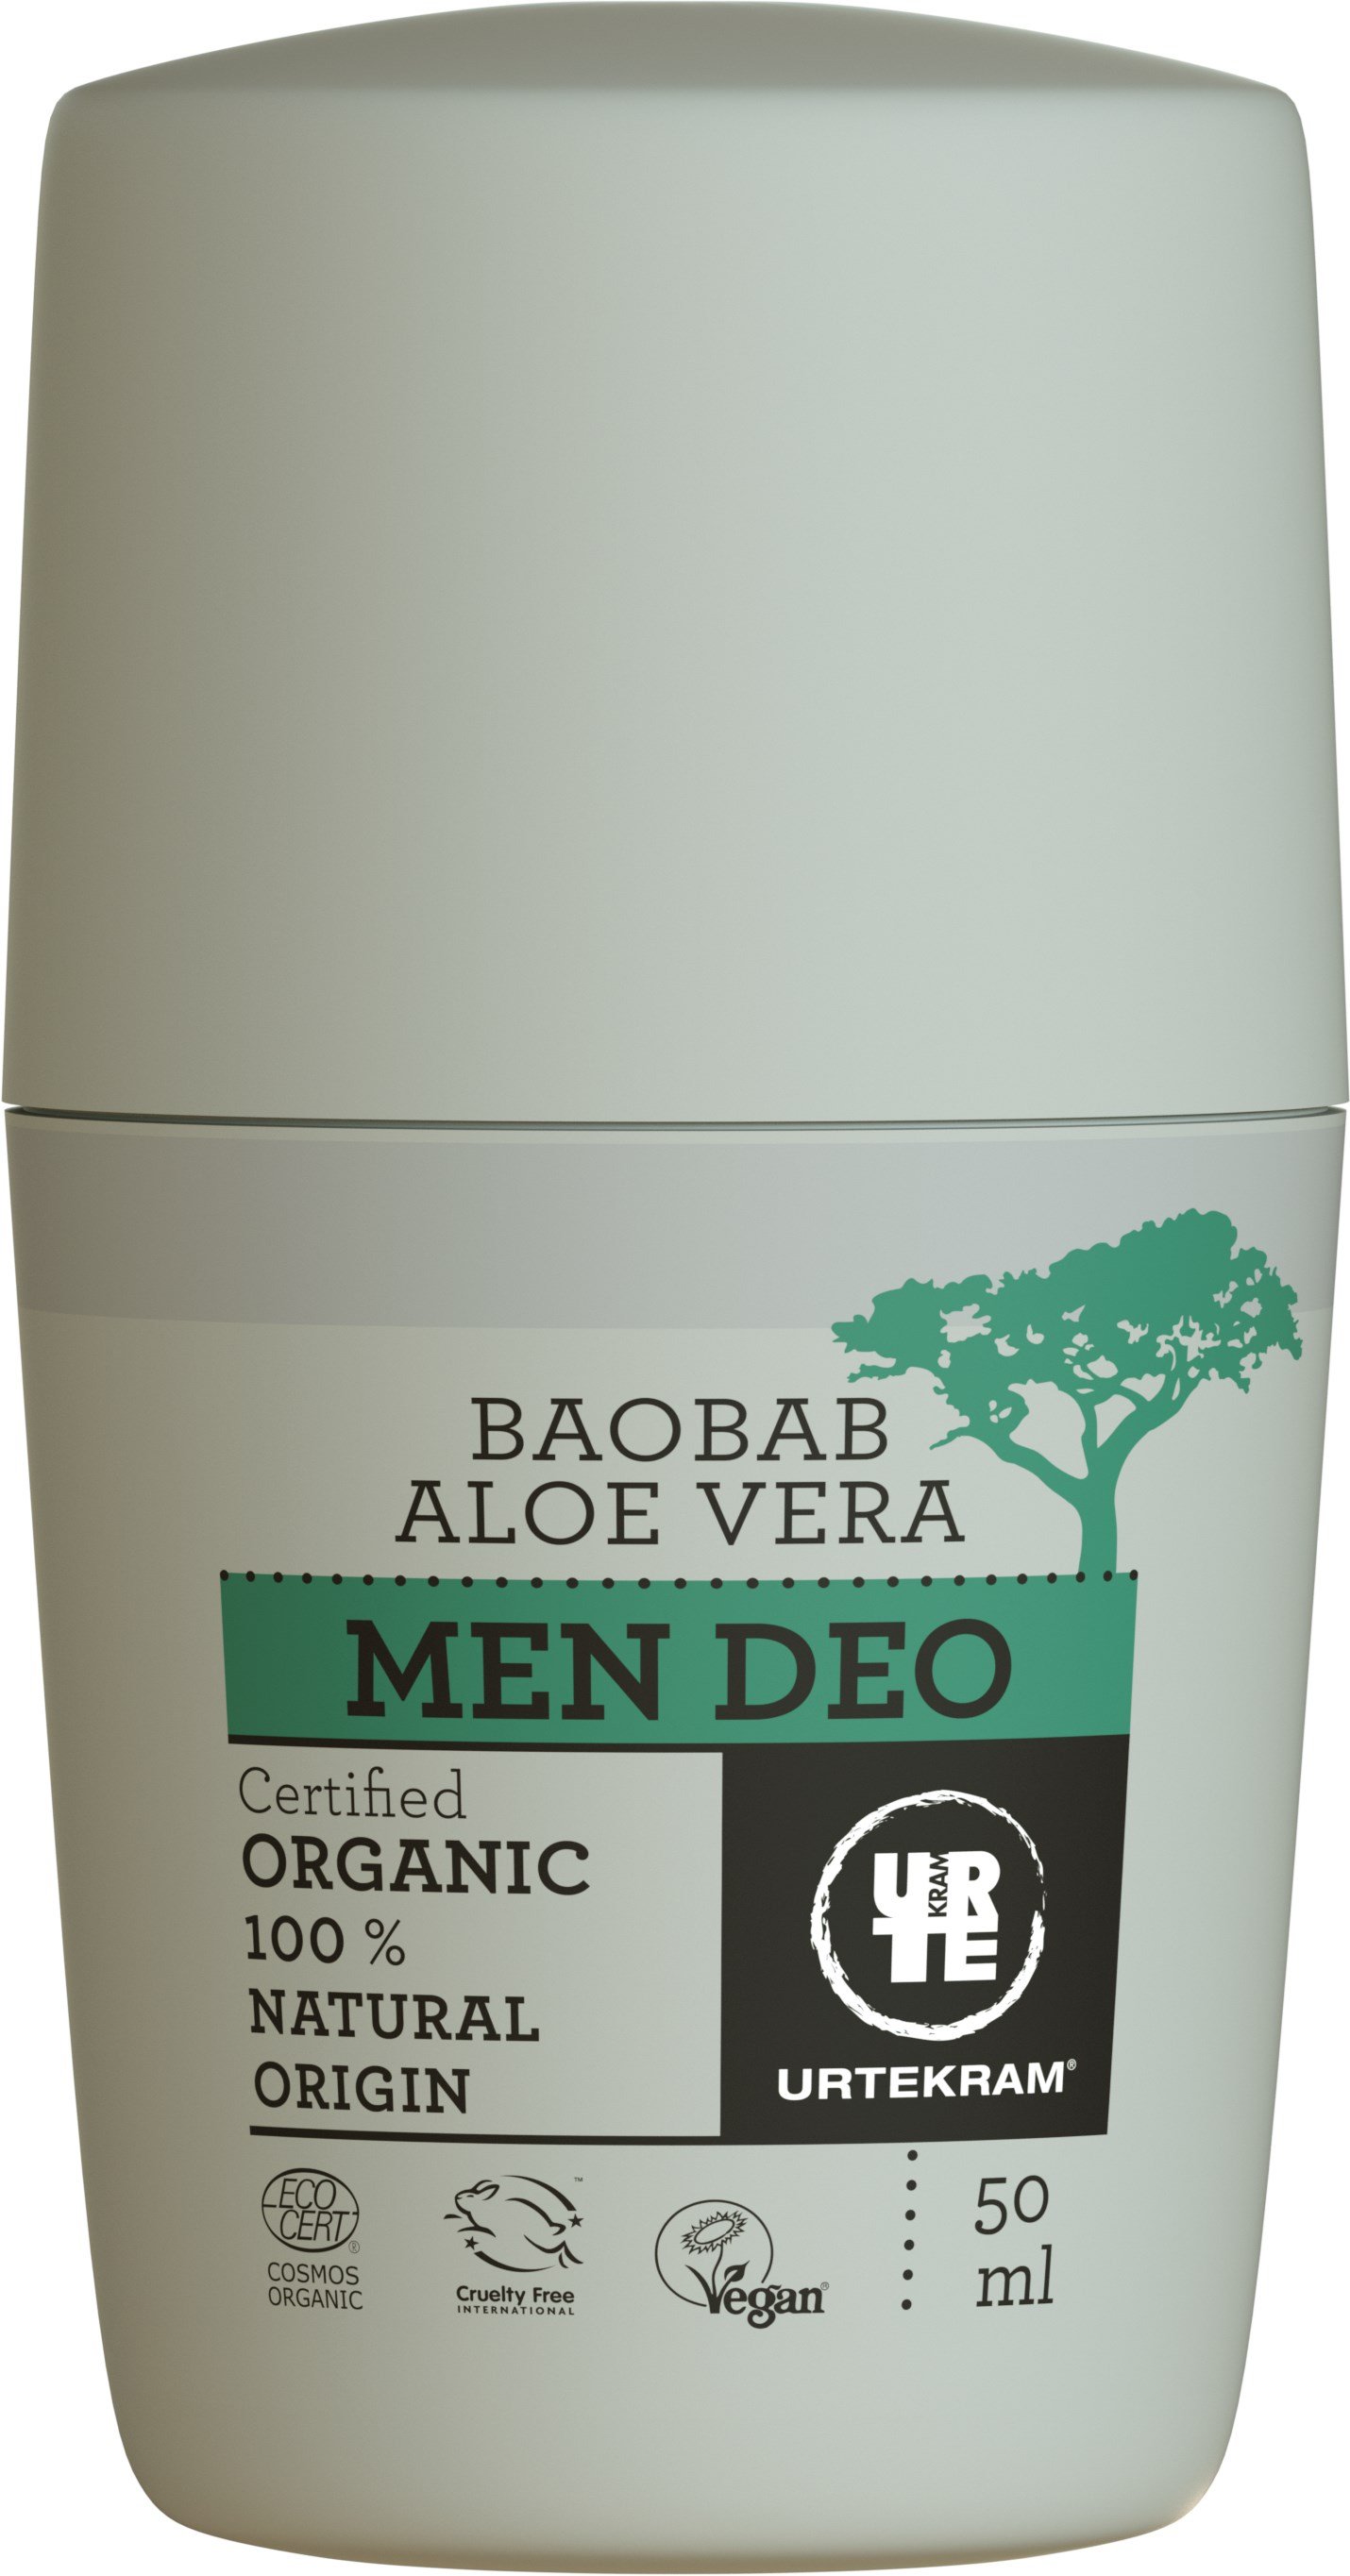 Органічний крем-дезодорант Urtekram Баобаб і Алое Вера, для чоловіків, 50 мл - фото 1